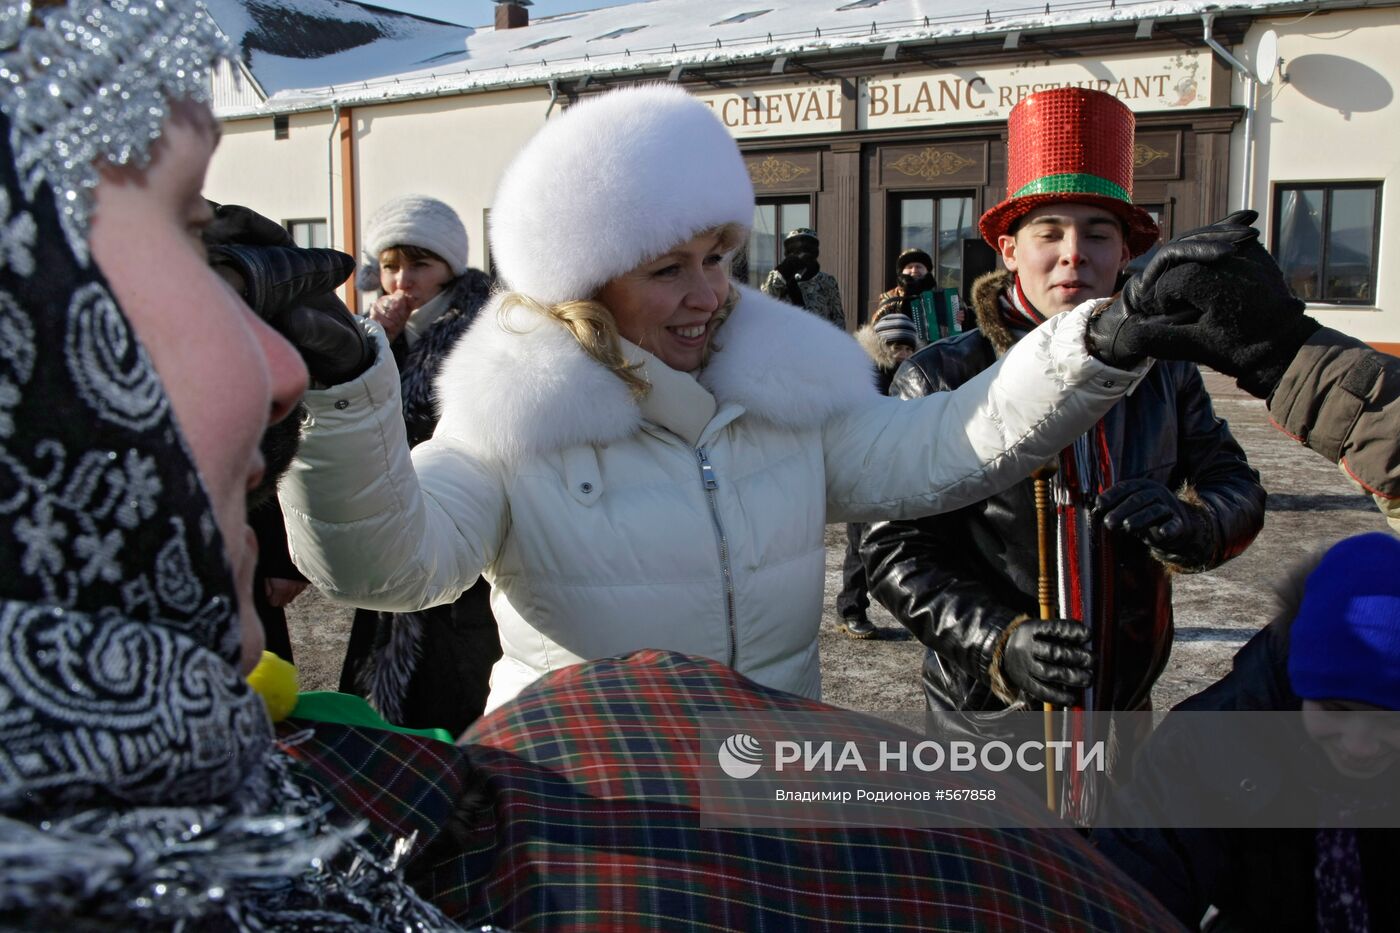 Светлана Медведева на празднике "Веселая масленица"